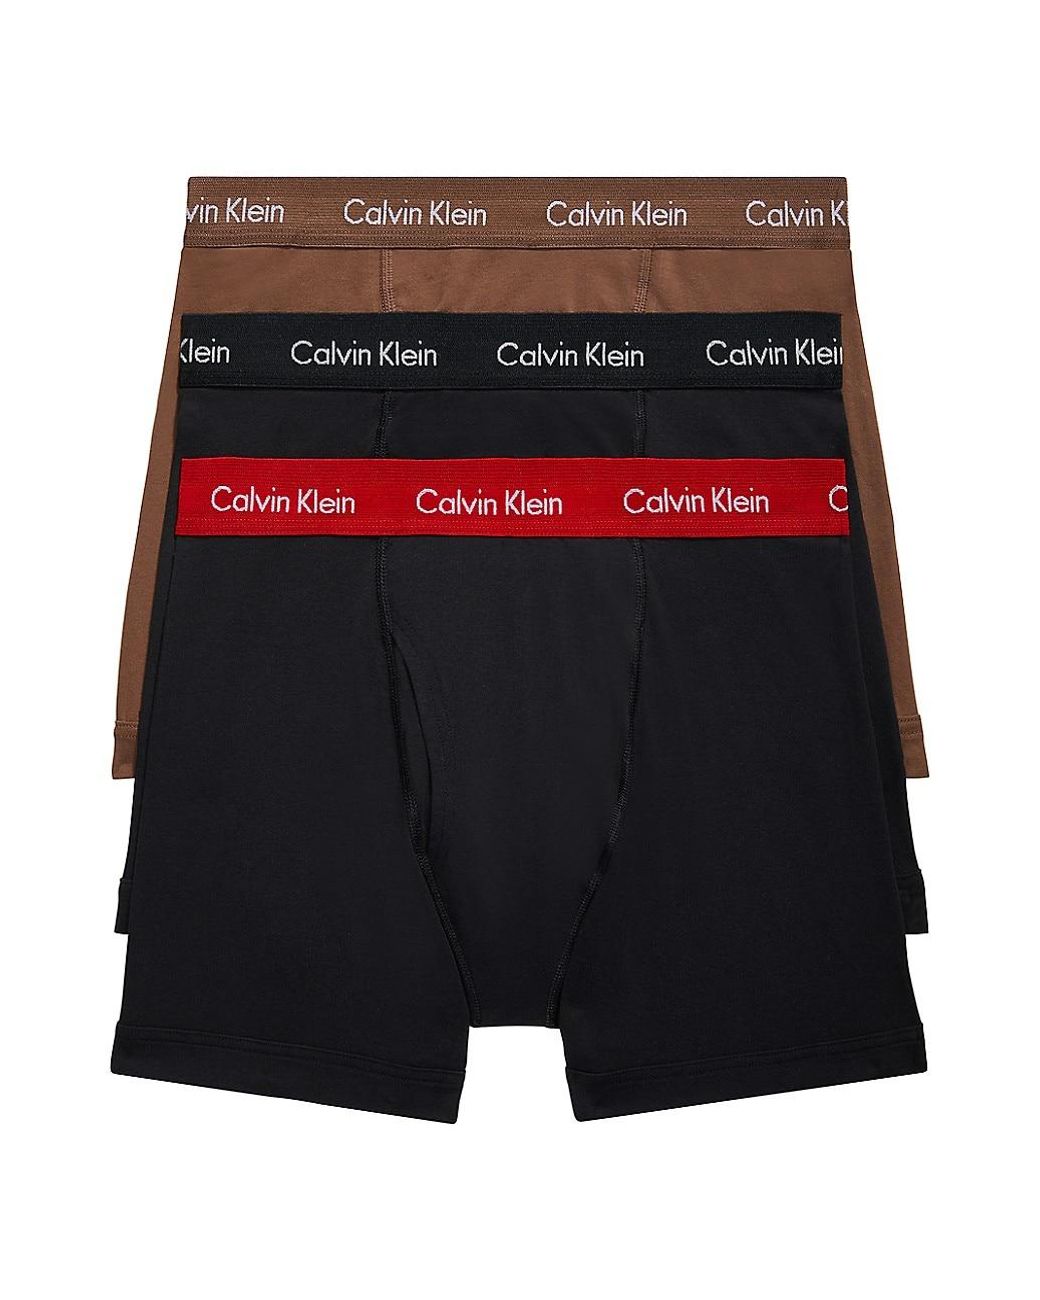 Calvin Klein Cotton Stretch Regular Fit Boxer Briefs, Pack of 3, Black